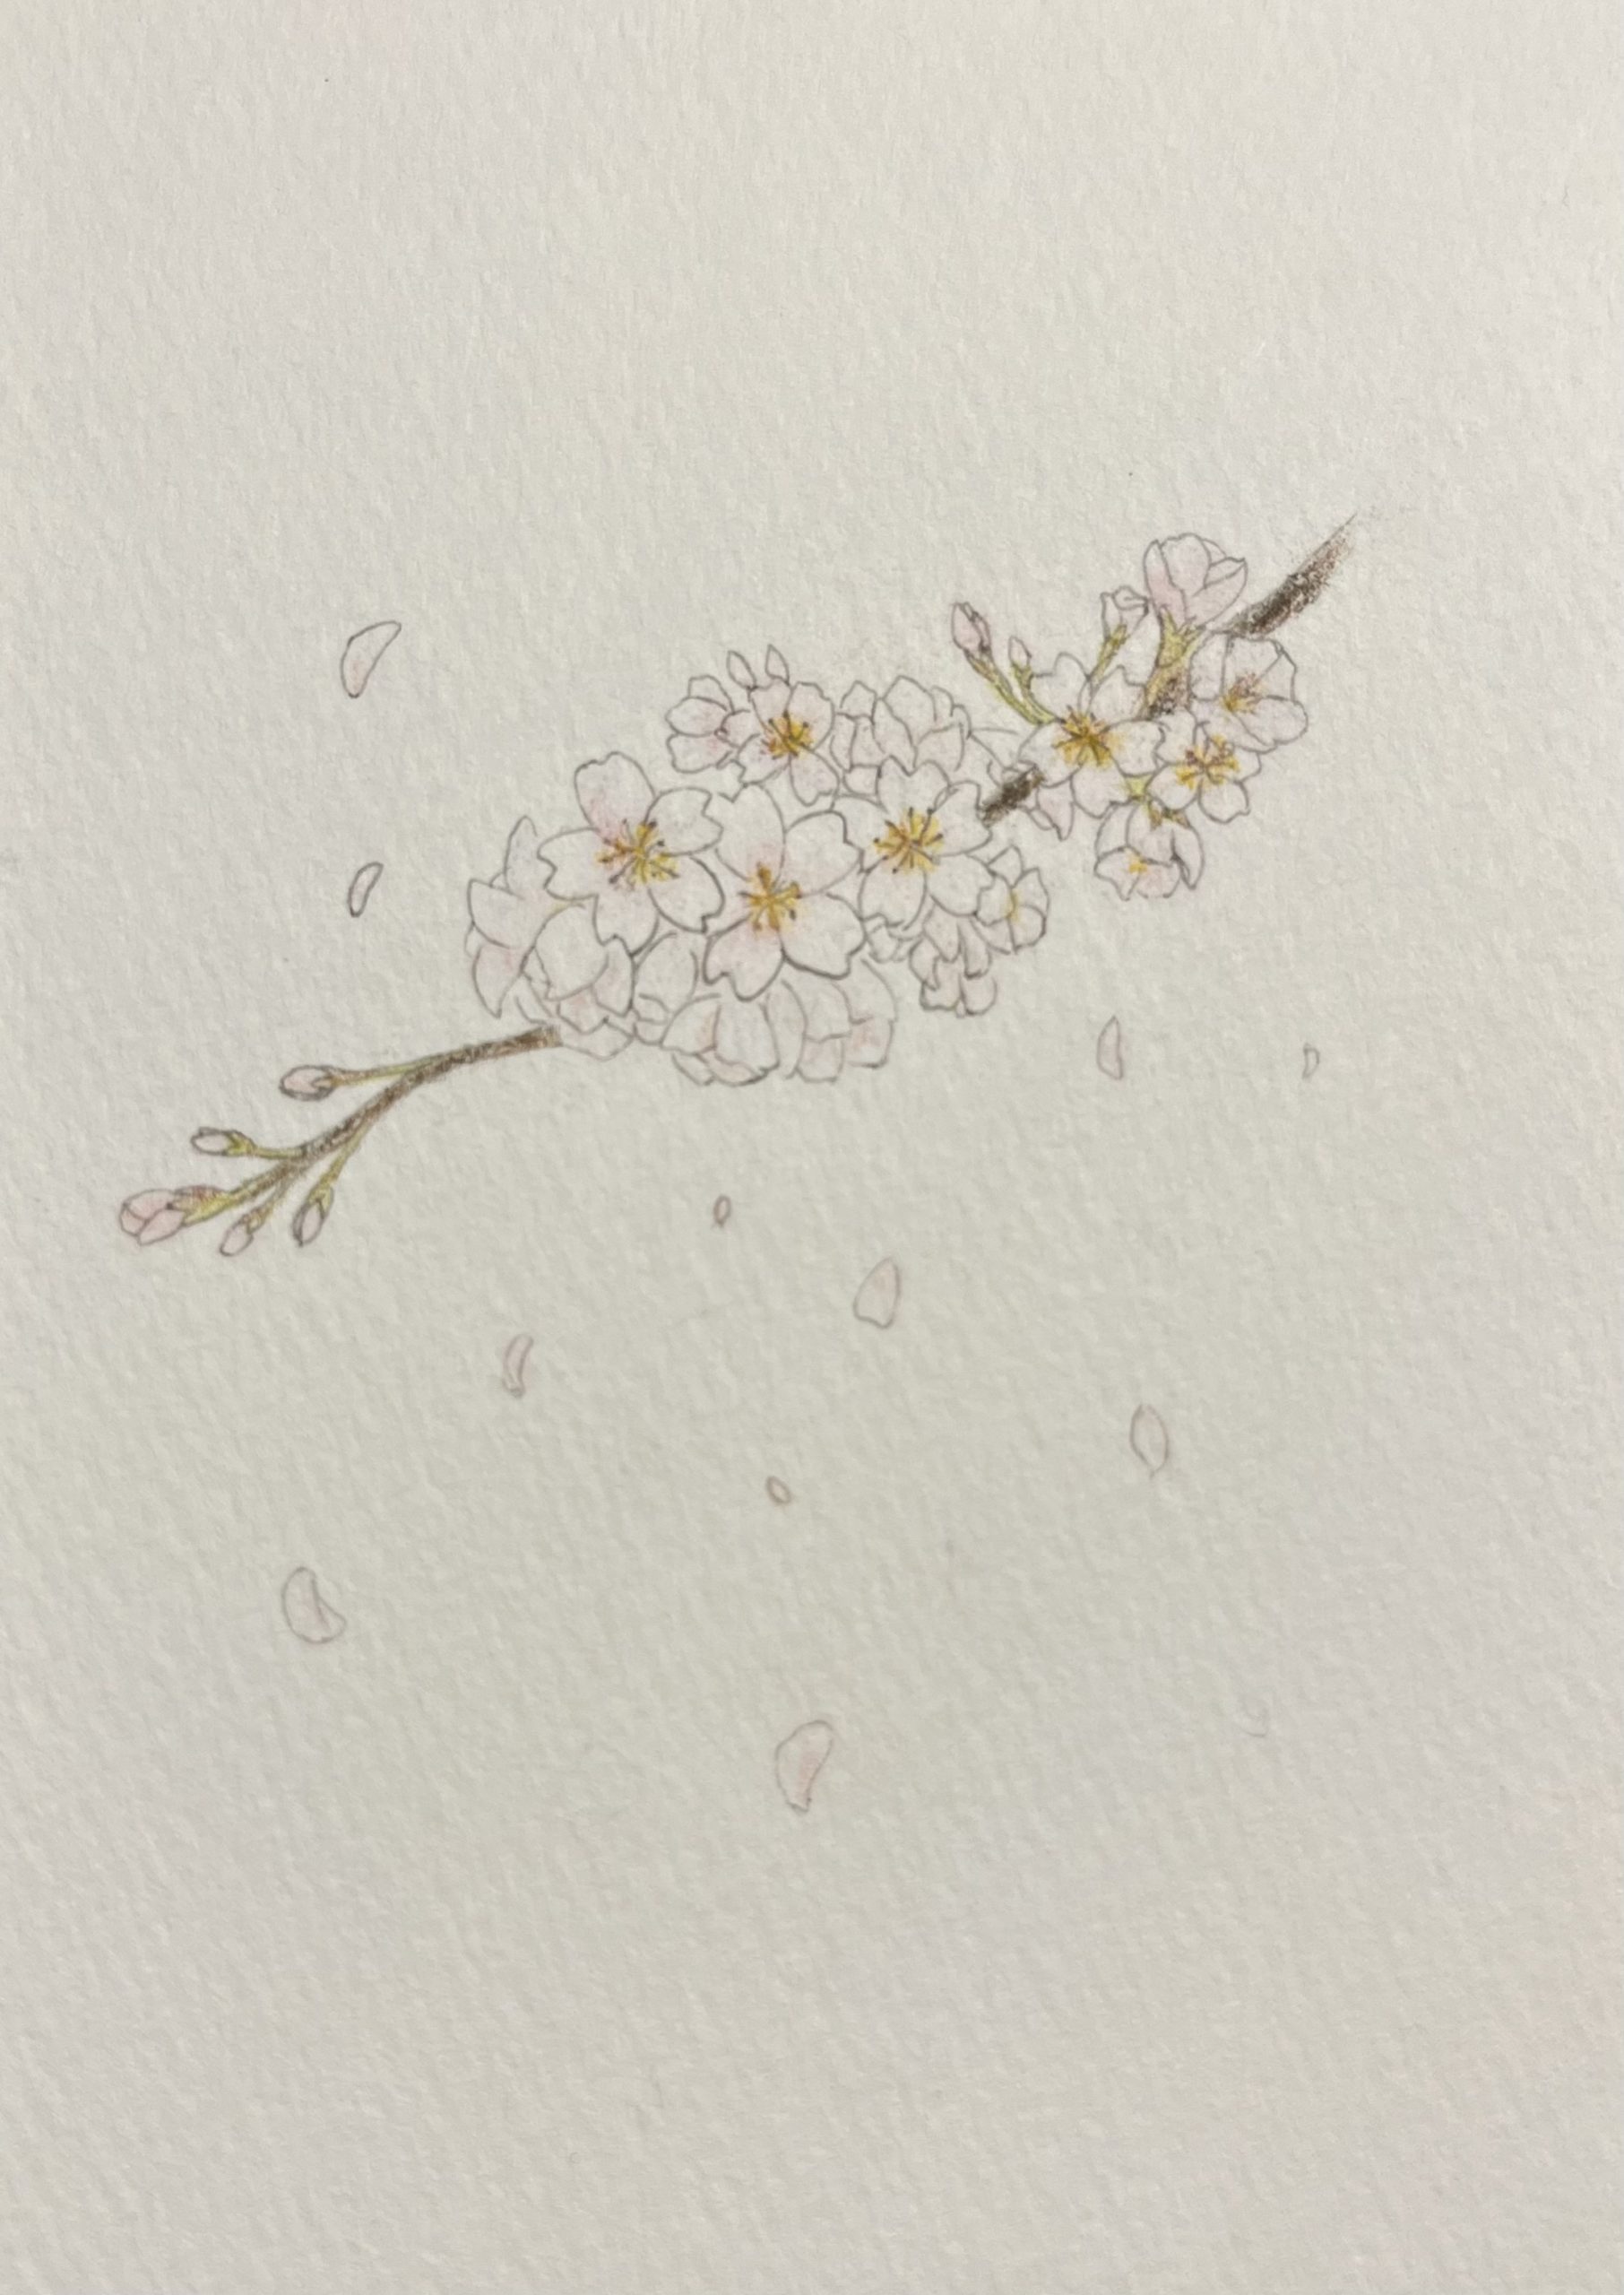 ソメイヨシノ（東京都県花）